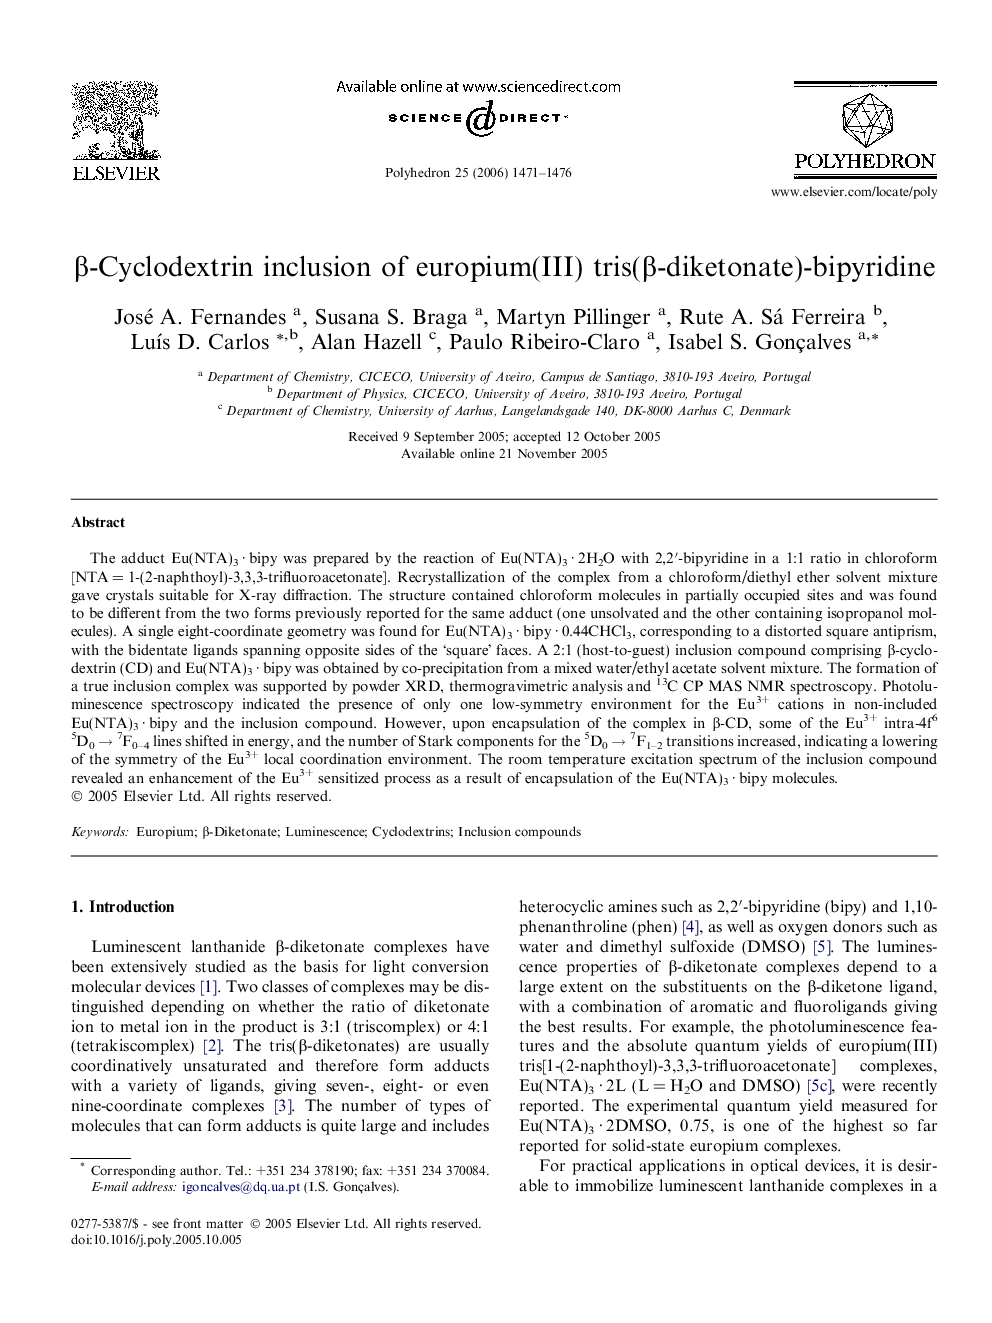 Î²-Cyclodextrin inclusion of europium(III) tris(Î²-diketonate)-bipyridine